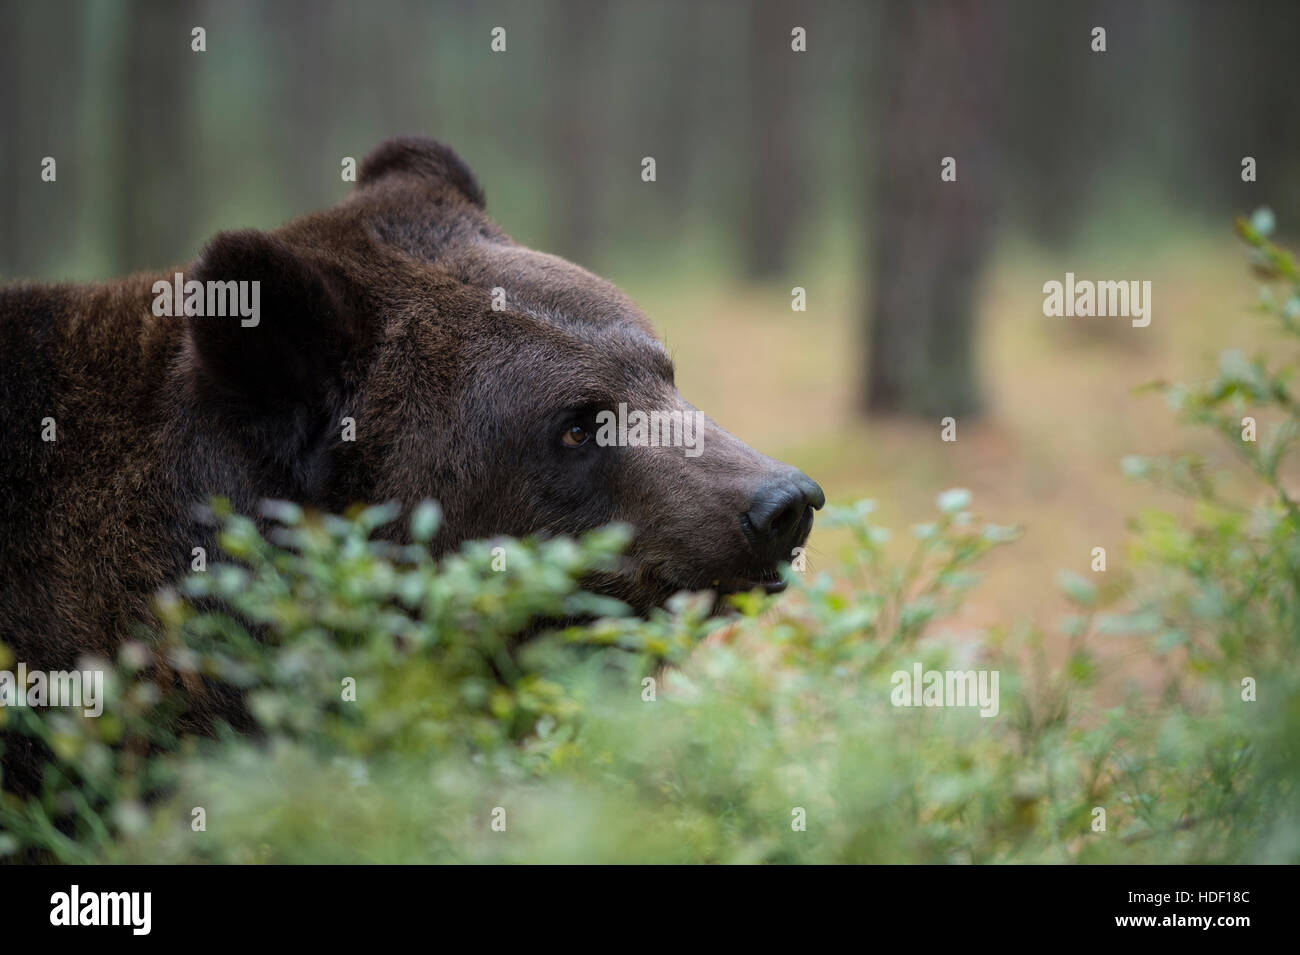 Ours brun européen / Braunbaer ( Ursus arctos ), jeune adulte, portrait, close-up, dans une forêt, caché derrière des buissons. Banque D'Images